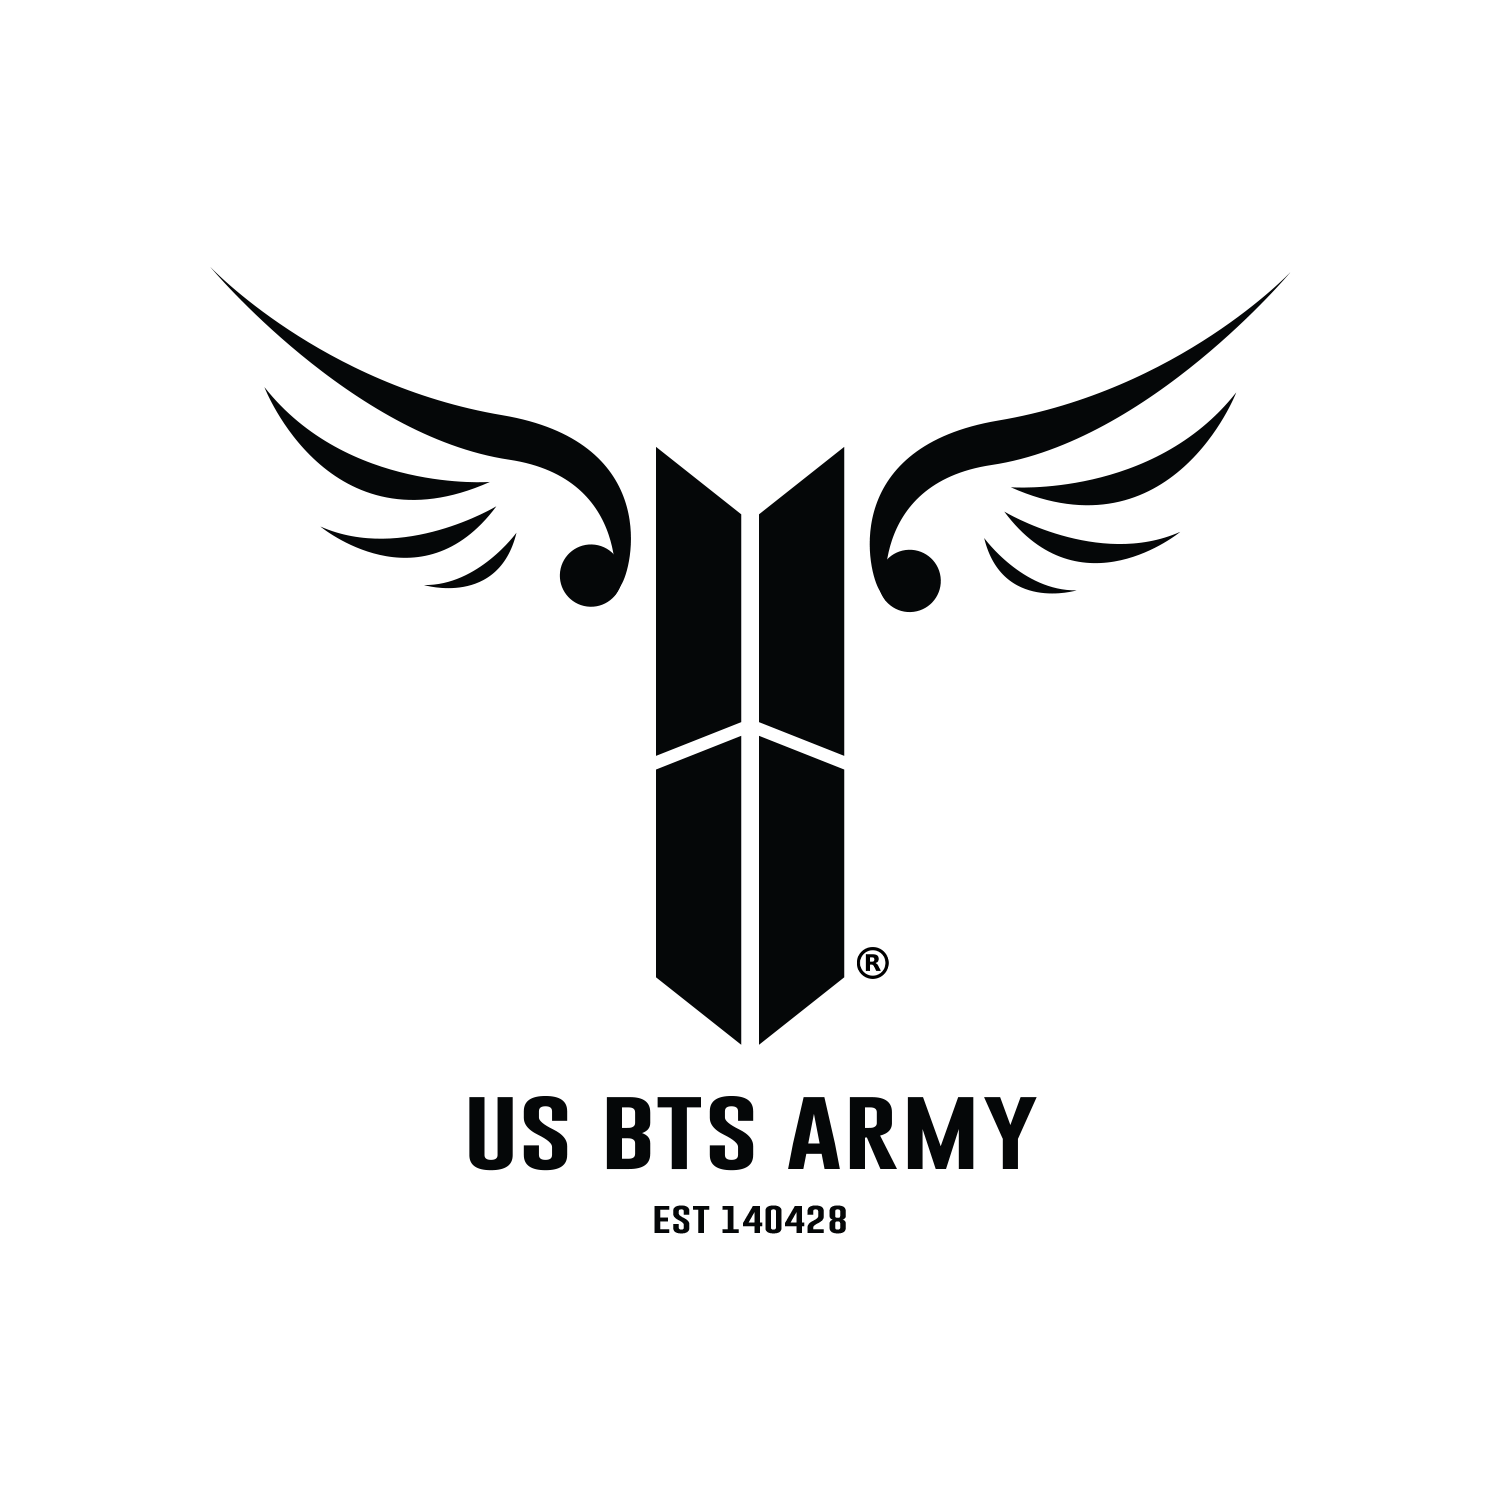 DVD] BTS MEMORIES OF 2017 — US BTS ARMY